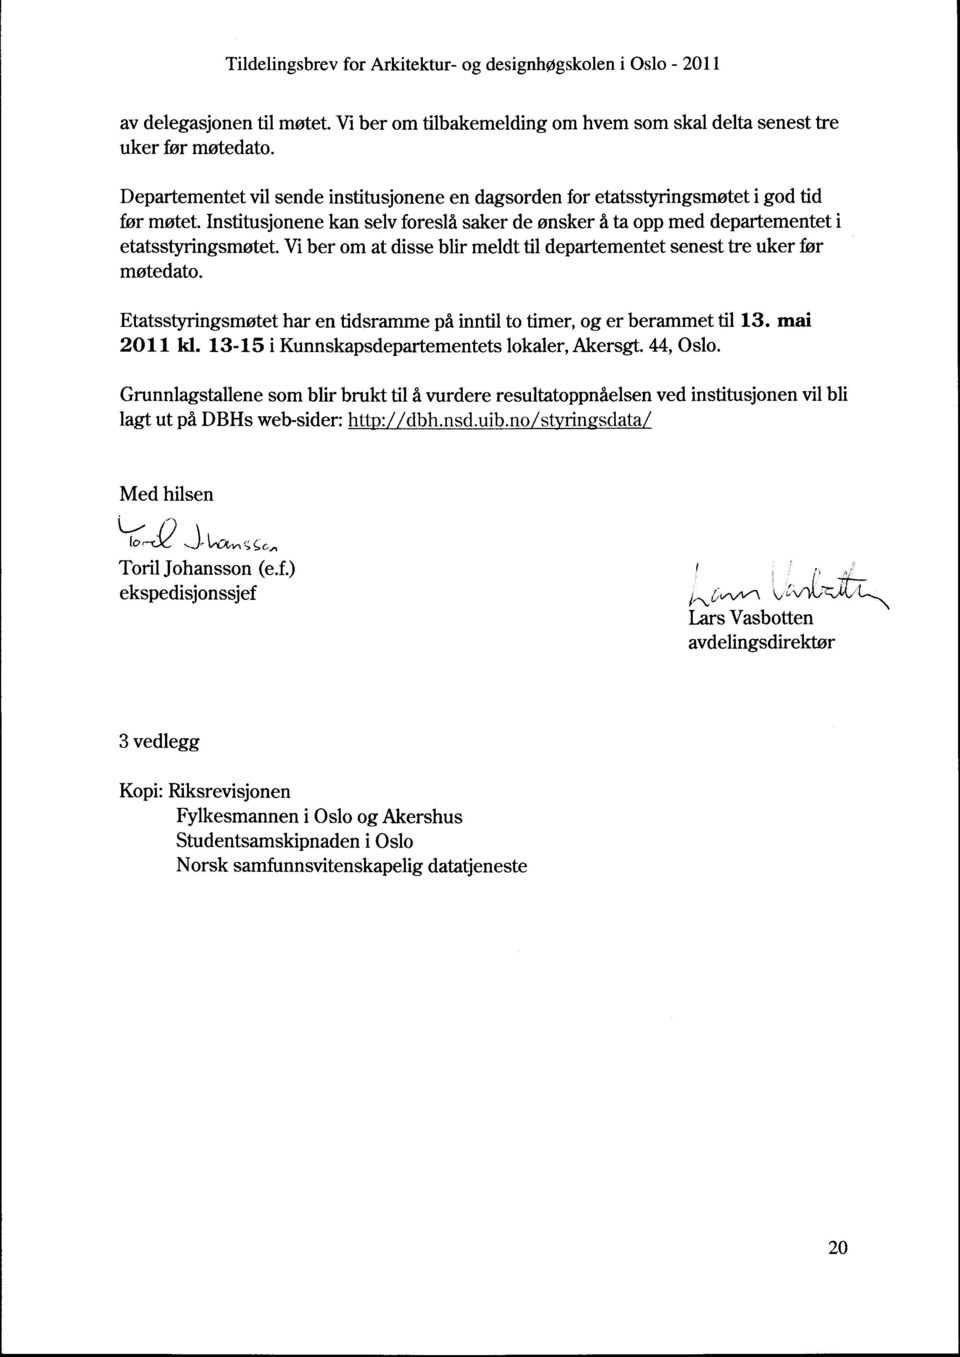 Etatsstyringsmøtet har en tidsramme på inntil to timer, og er berammet til 13. mai 2011 kl. 13-15 i Kunnskapsdepartementets lokaler, Akersgt. 44, Oslo.